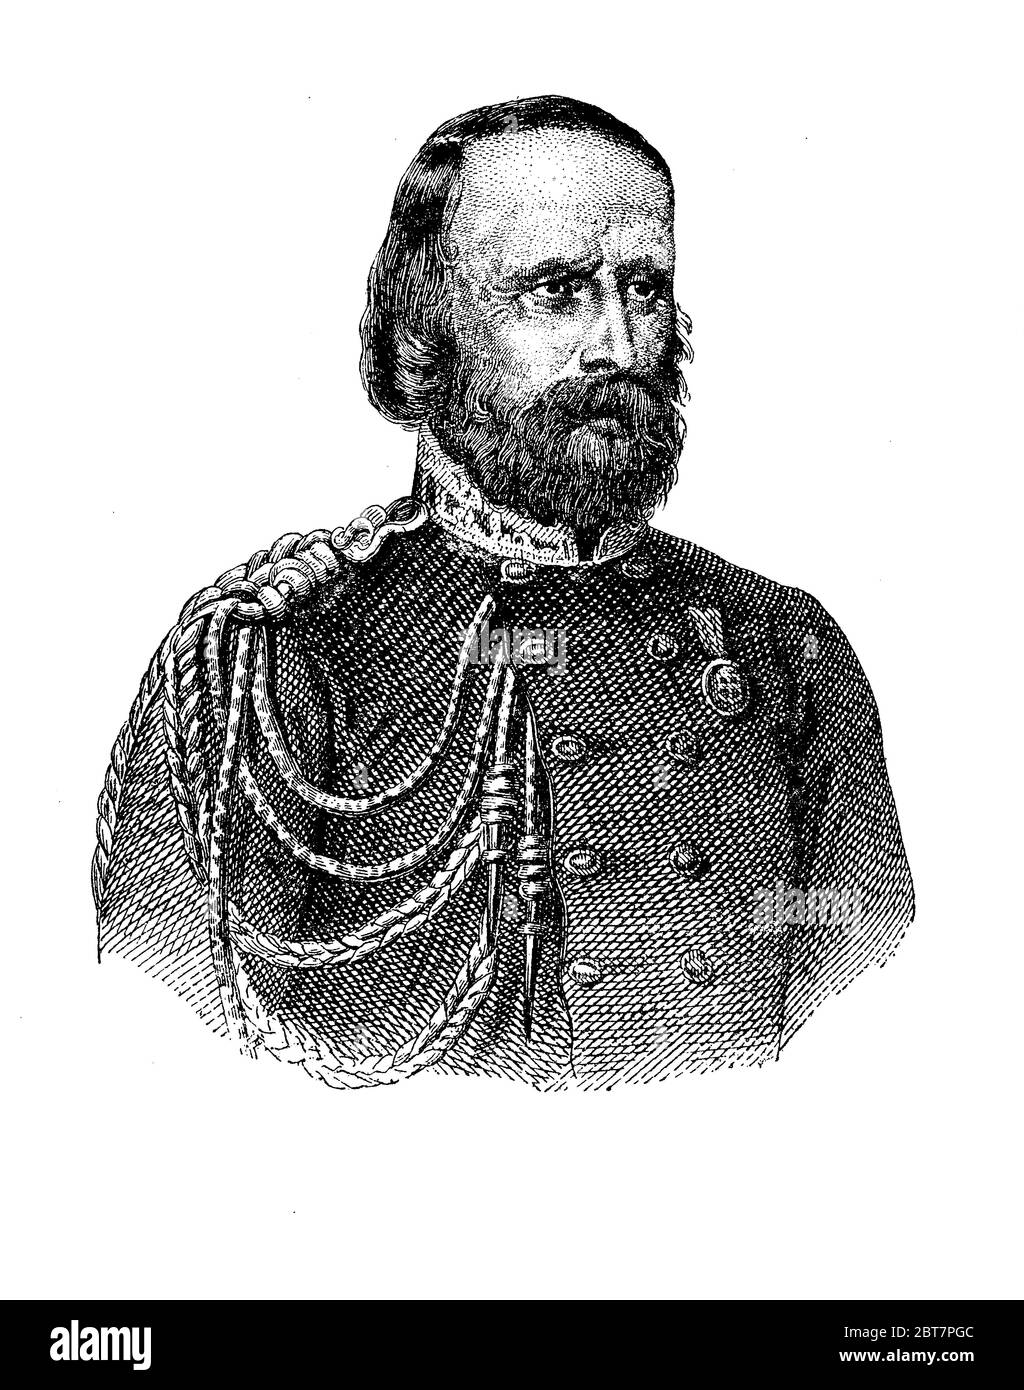 Portrait de Giuseppe Garibaldi (1807 - 1882) général et républicain italien, nommé héros des deux mondes pour ses entreprises militaires en Amérique du Sud et en Italie, où contribué à l'unification du pays Banque D'Images